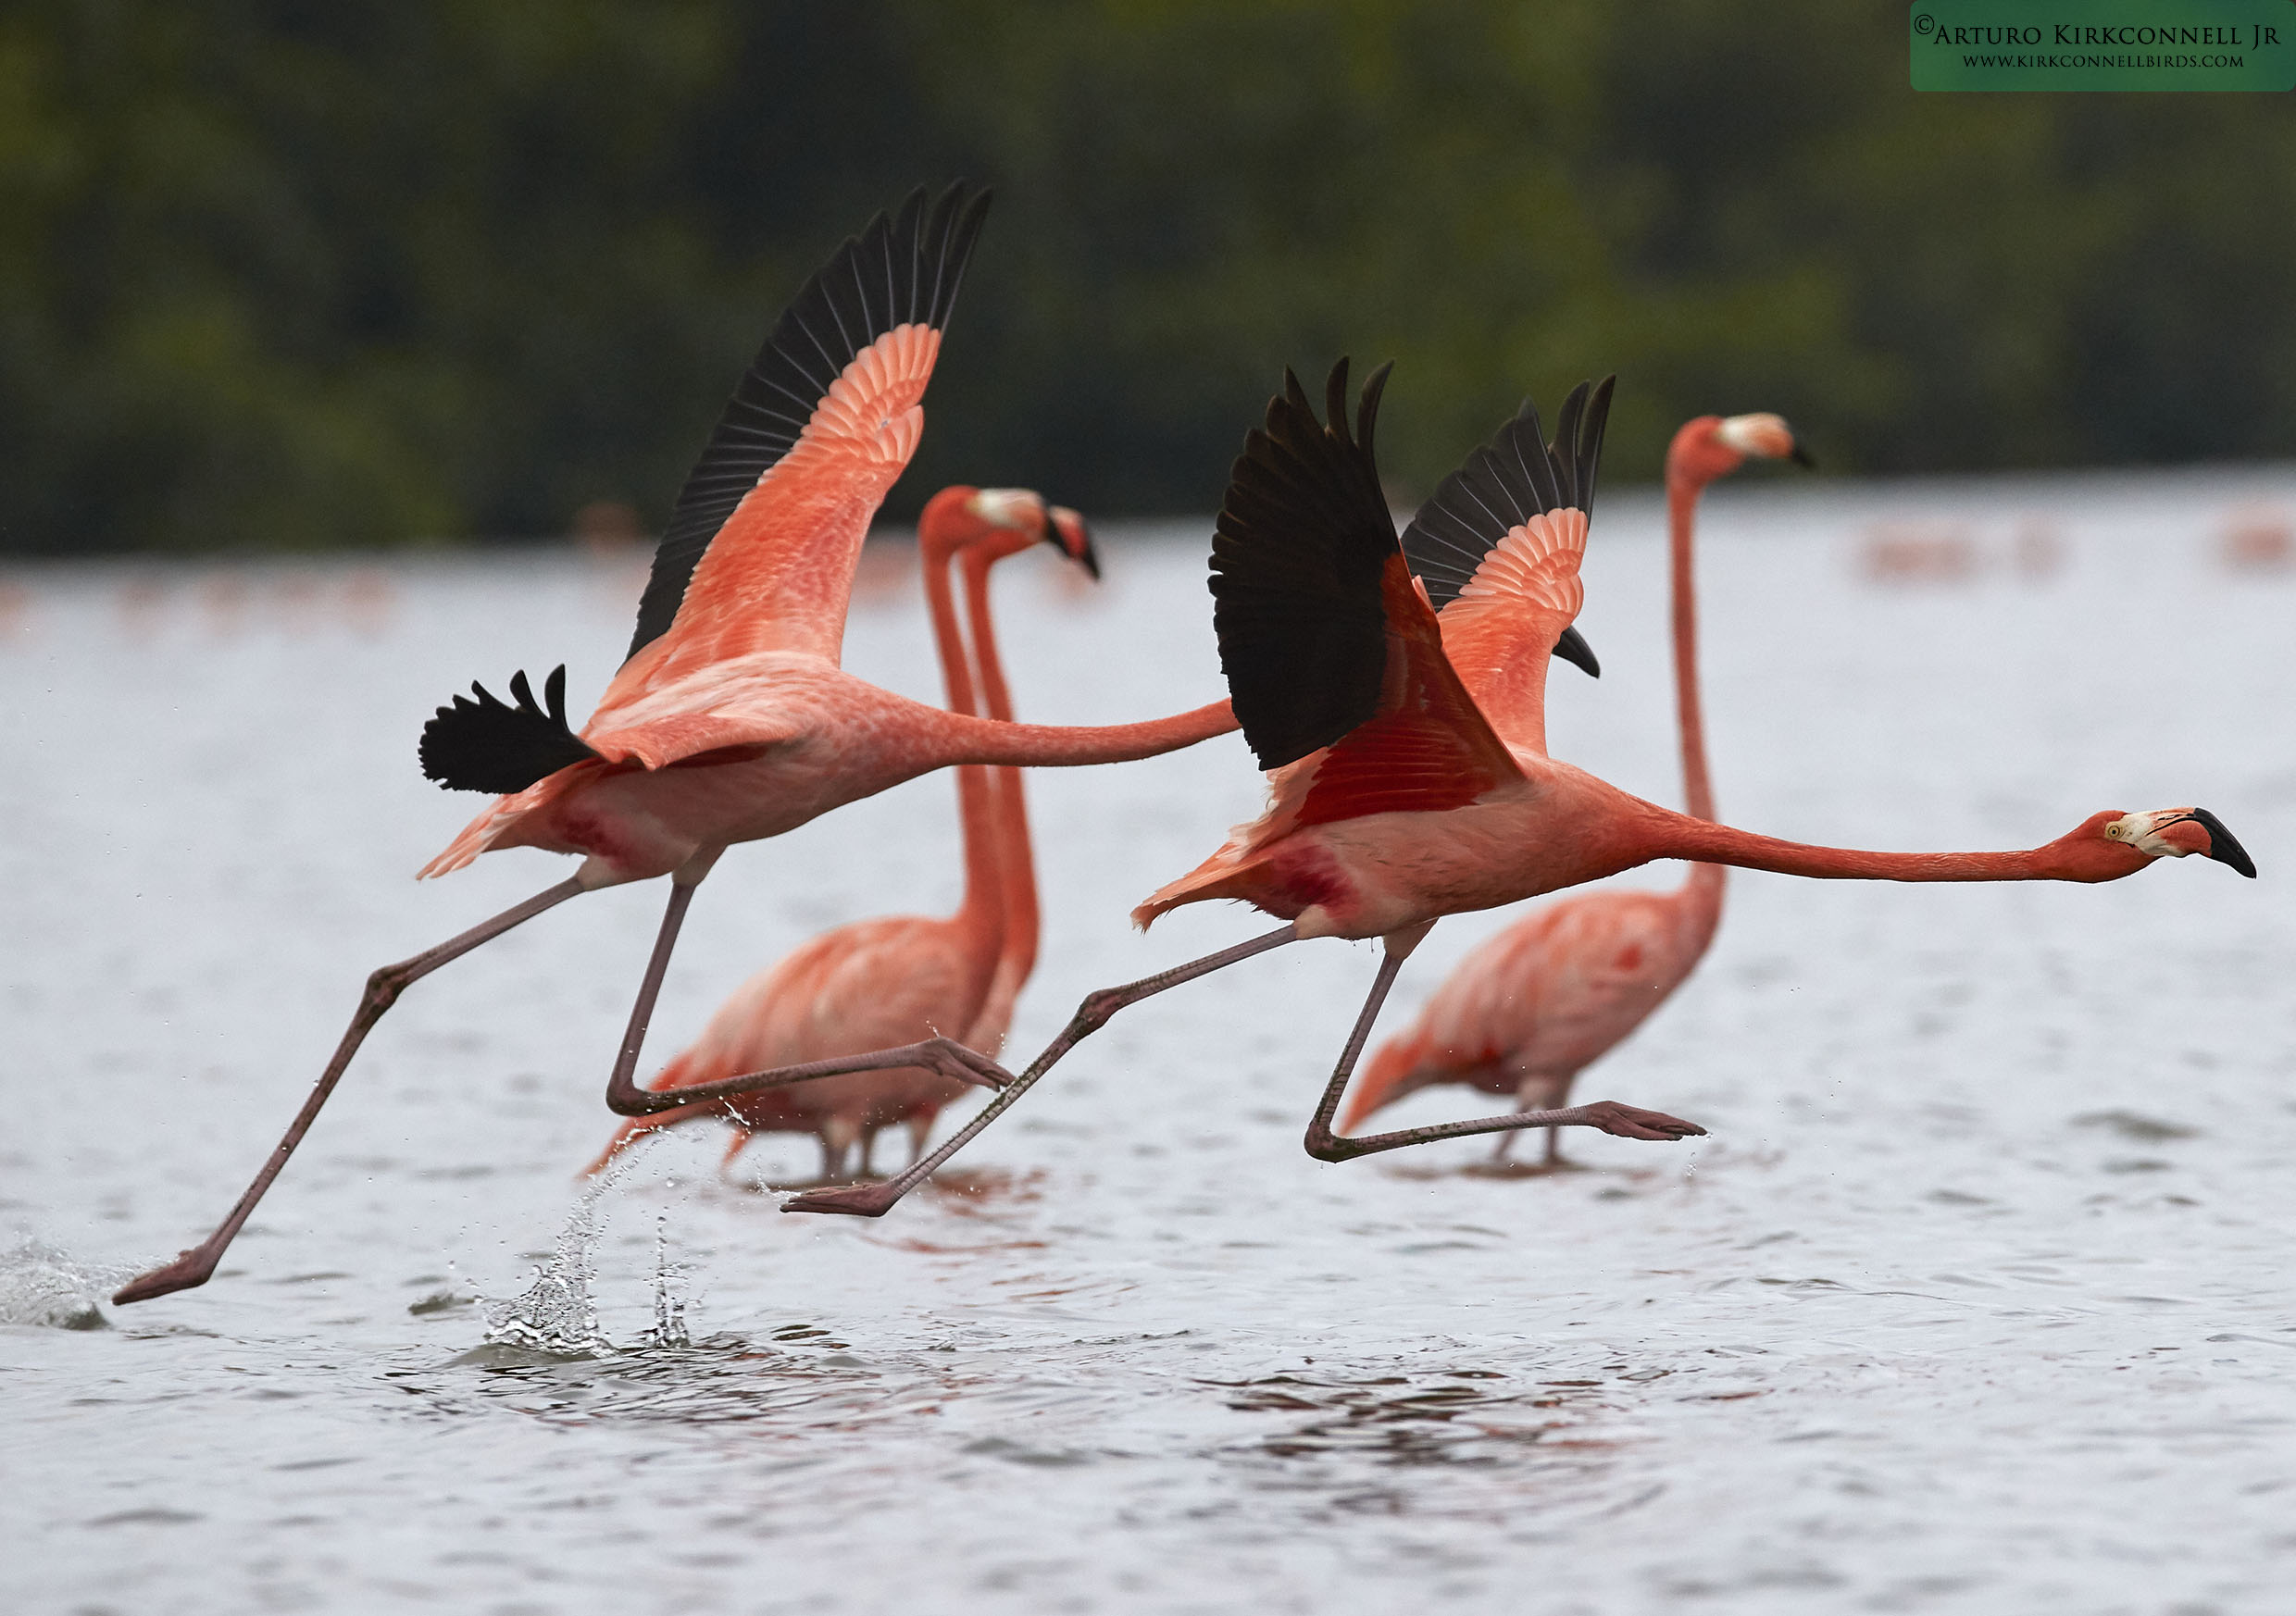 American Flamingo - Guanaroca Cienfuegos